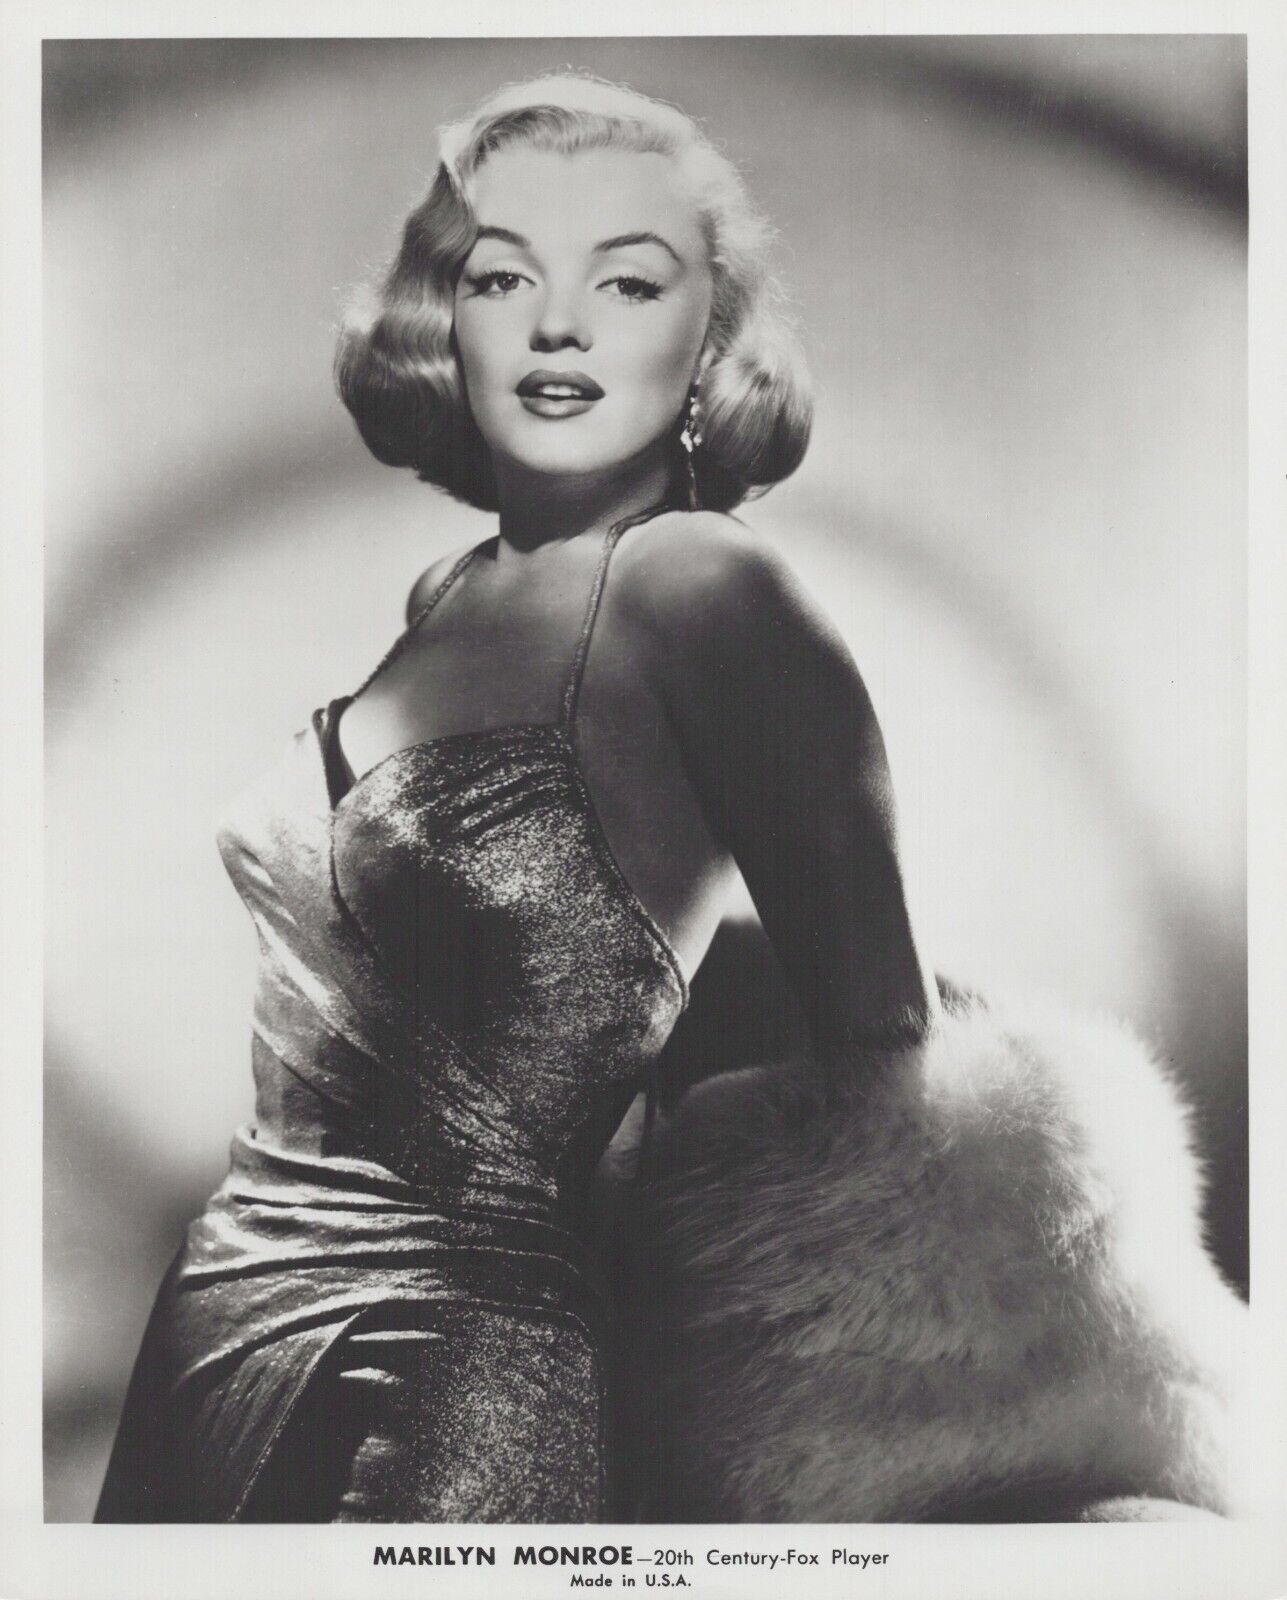 Marilyn Monroe (1960s) ❤ Hollywood Beauty - Stylish Glamorous Photo K 396